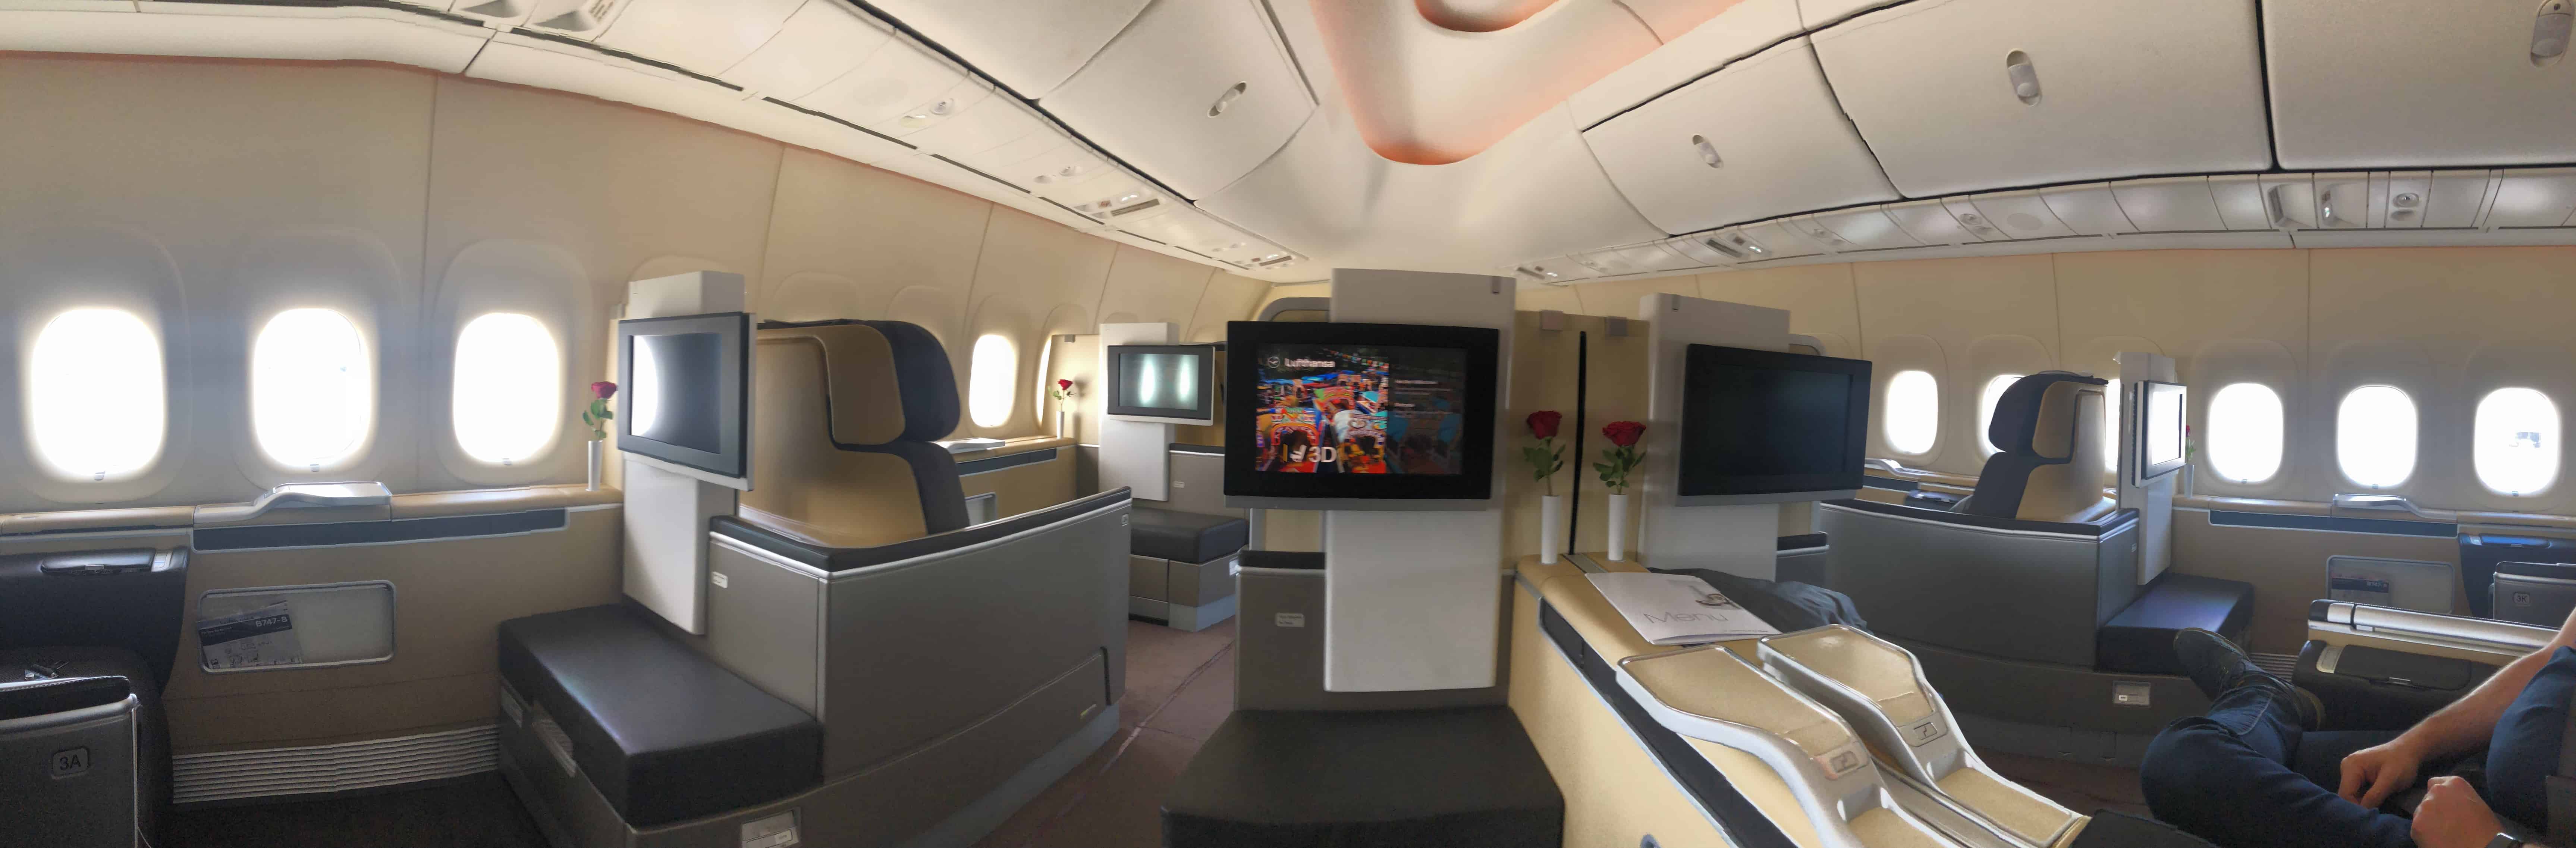 Bewertung Lufthansa First Class In Der Boeing 747 8 Nach